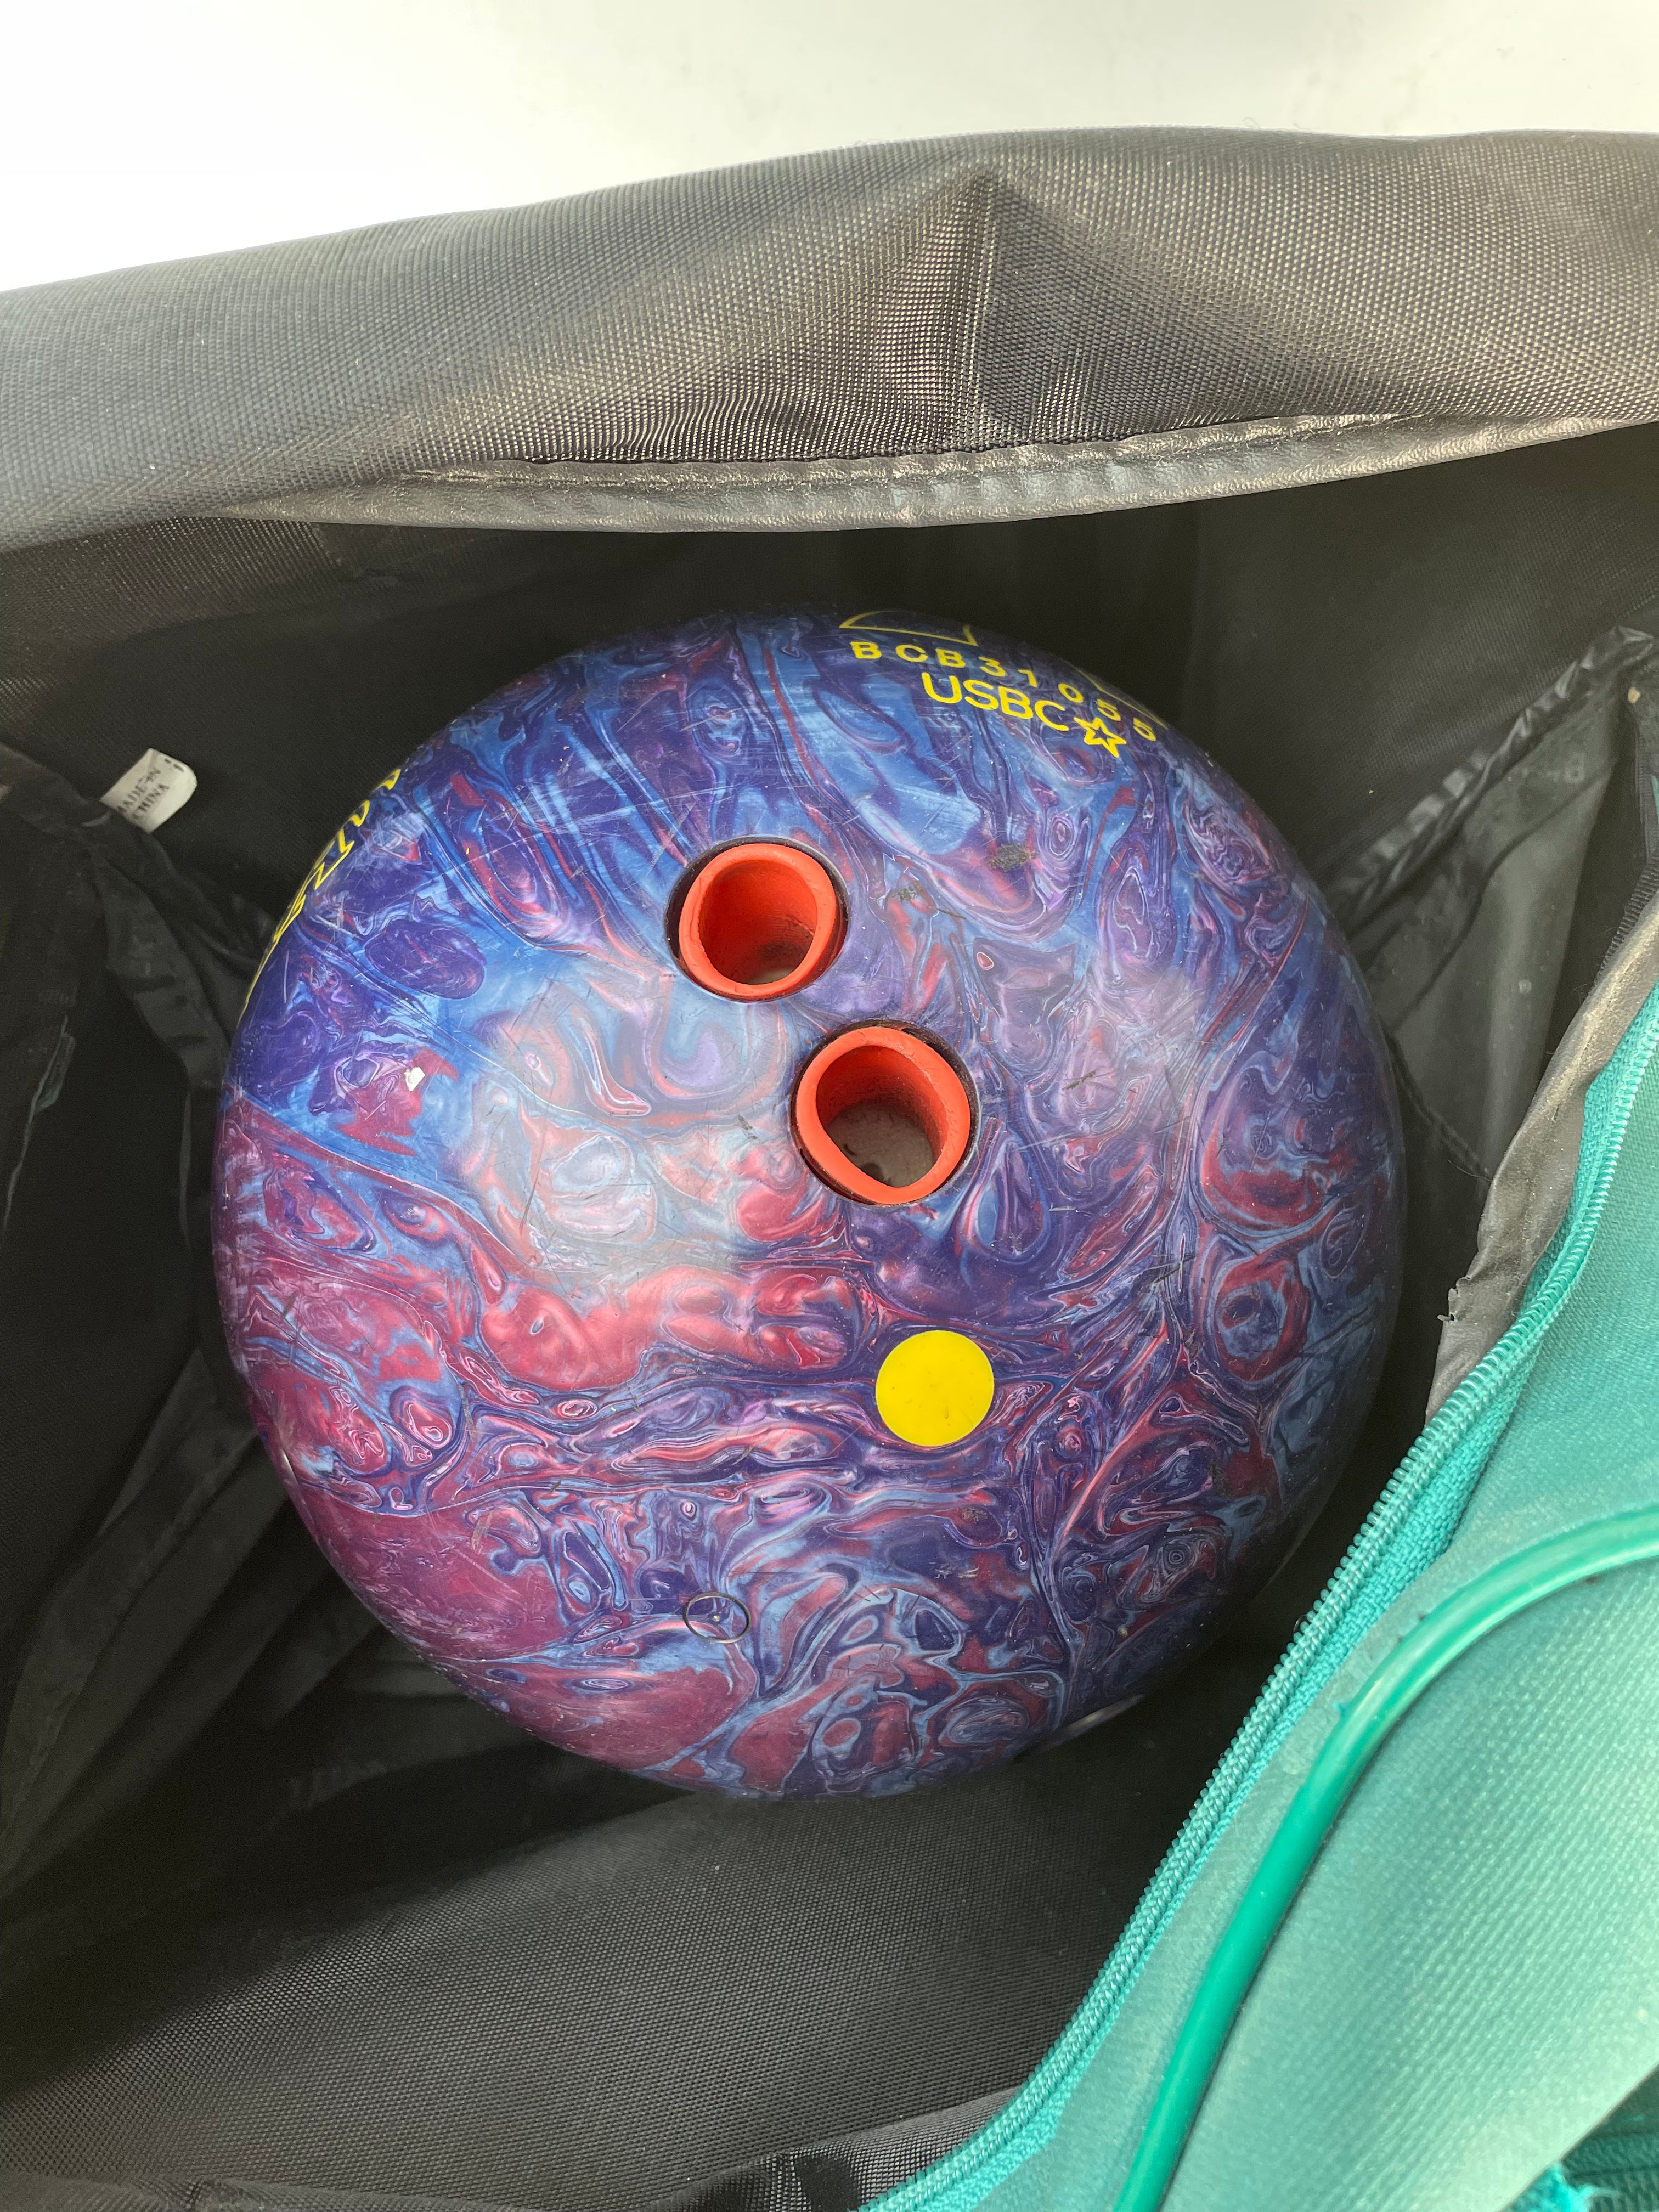 Rhino Bowling Ball and Bag